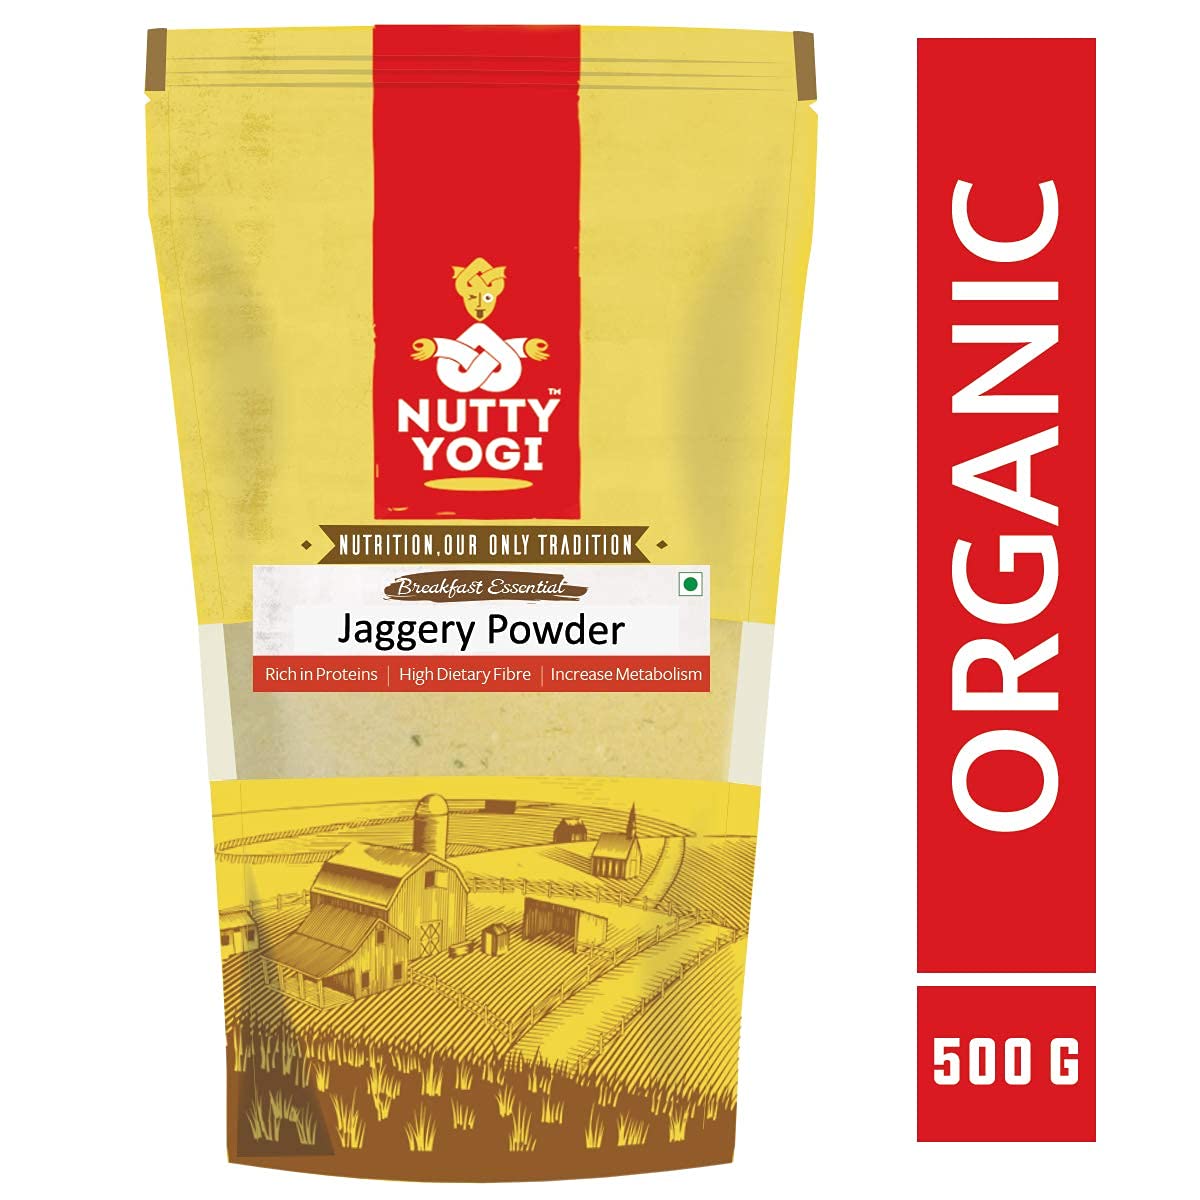 Nutty Yogi Jaggery Powder / Gud